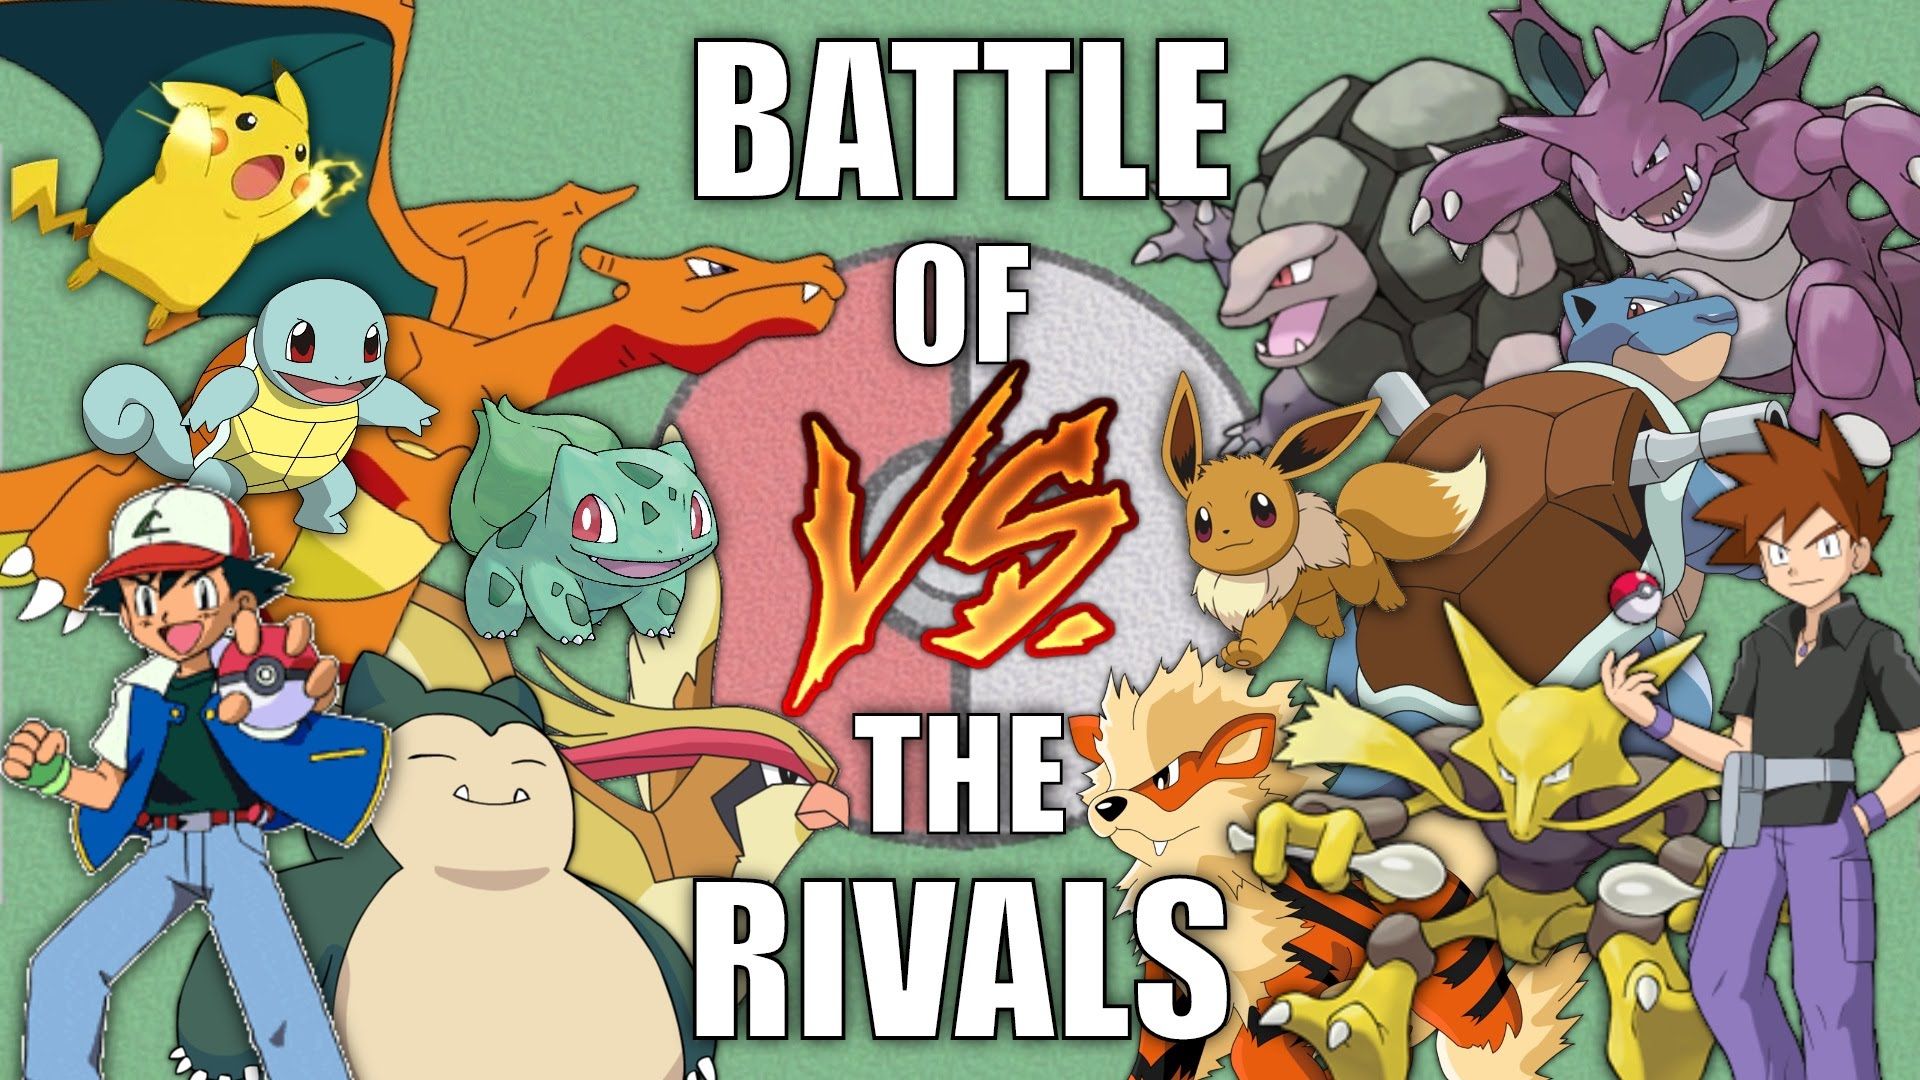 Pokémon battle revolution. Pokemon Battle Revolution. Битва покемонов. Pokemon Rivals. Покемон битва из игры.